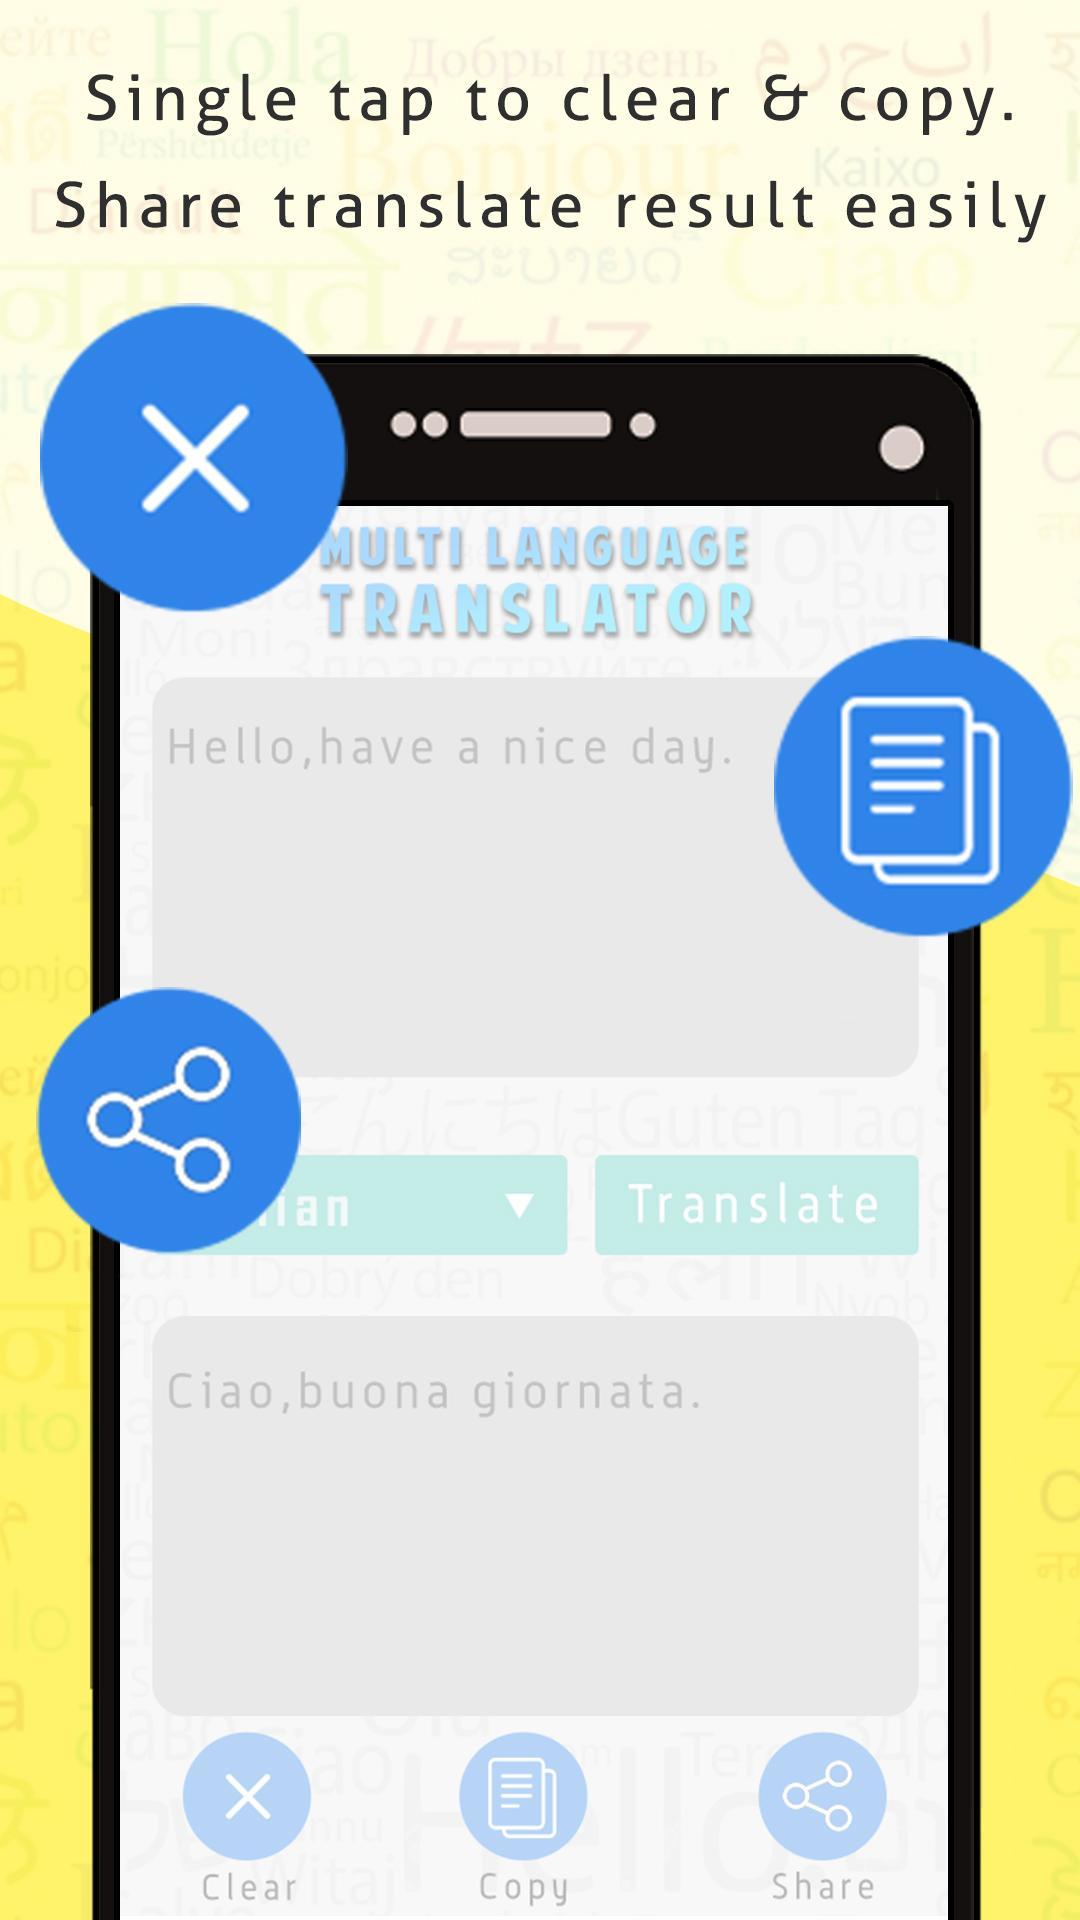 Wielojęzyczny tłumacz z mową for Android - APK Download